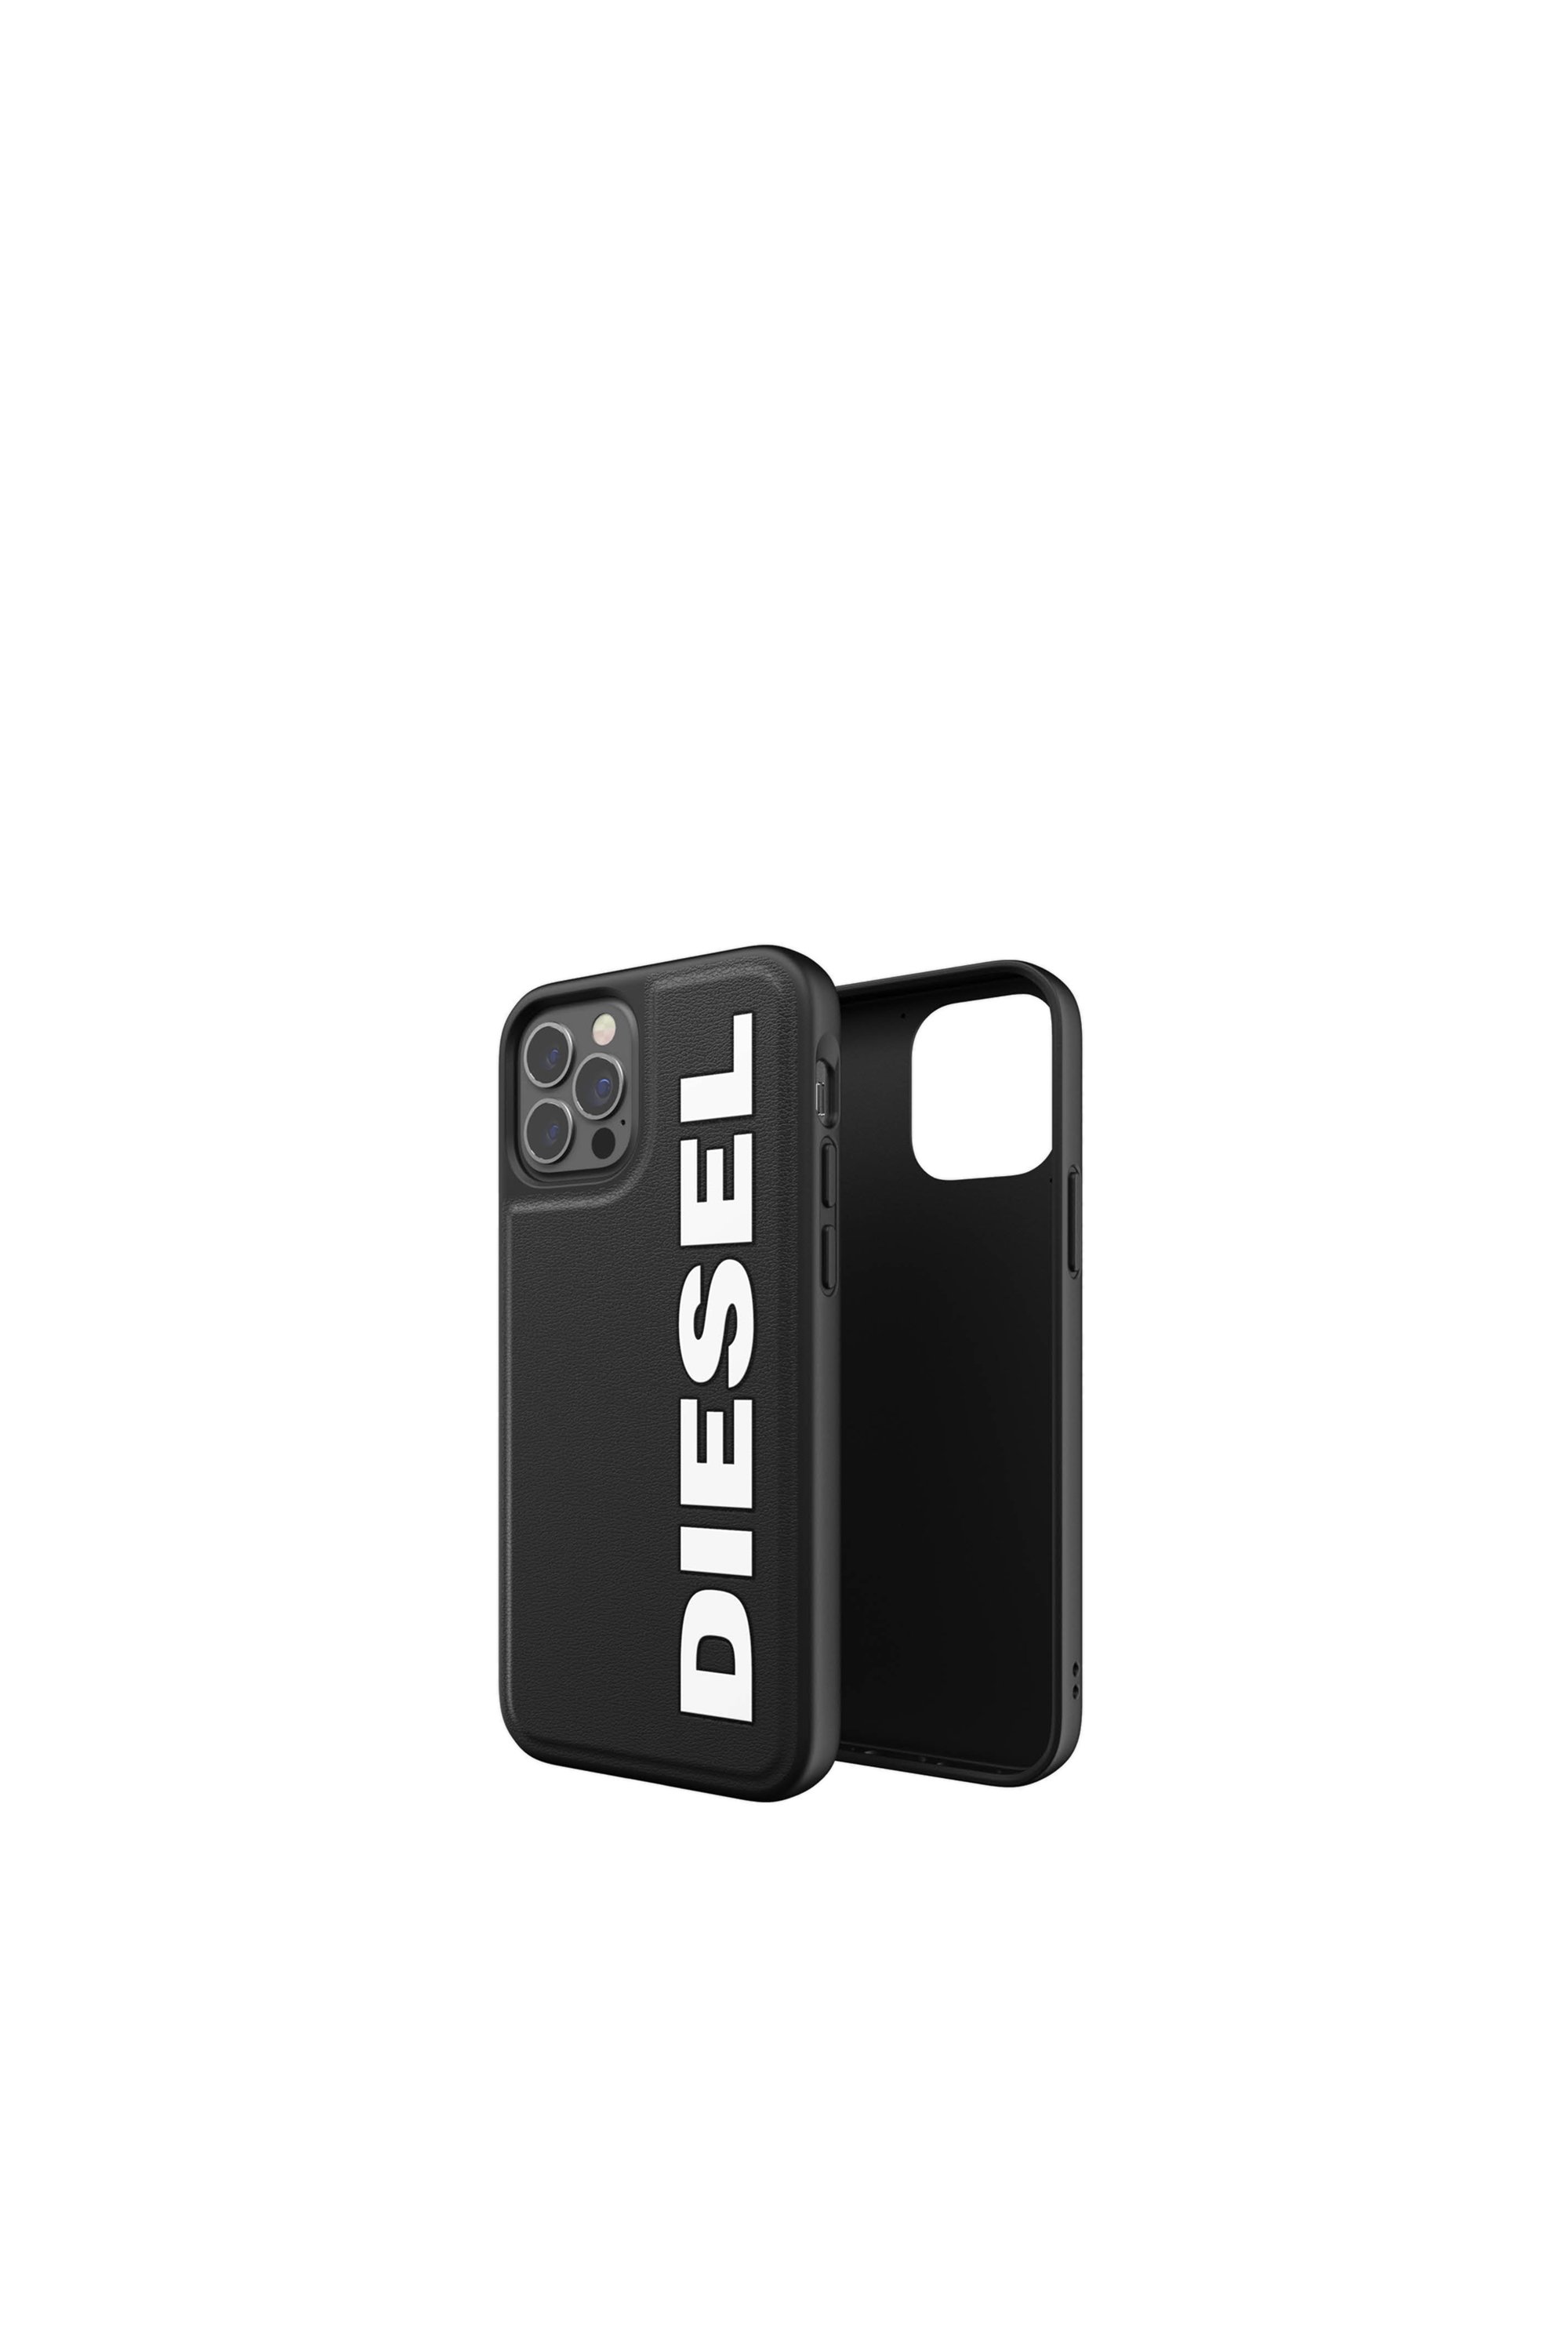 Diesel - 42492, Black - Image 1